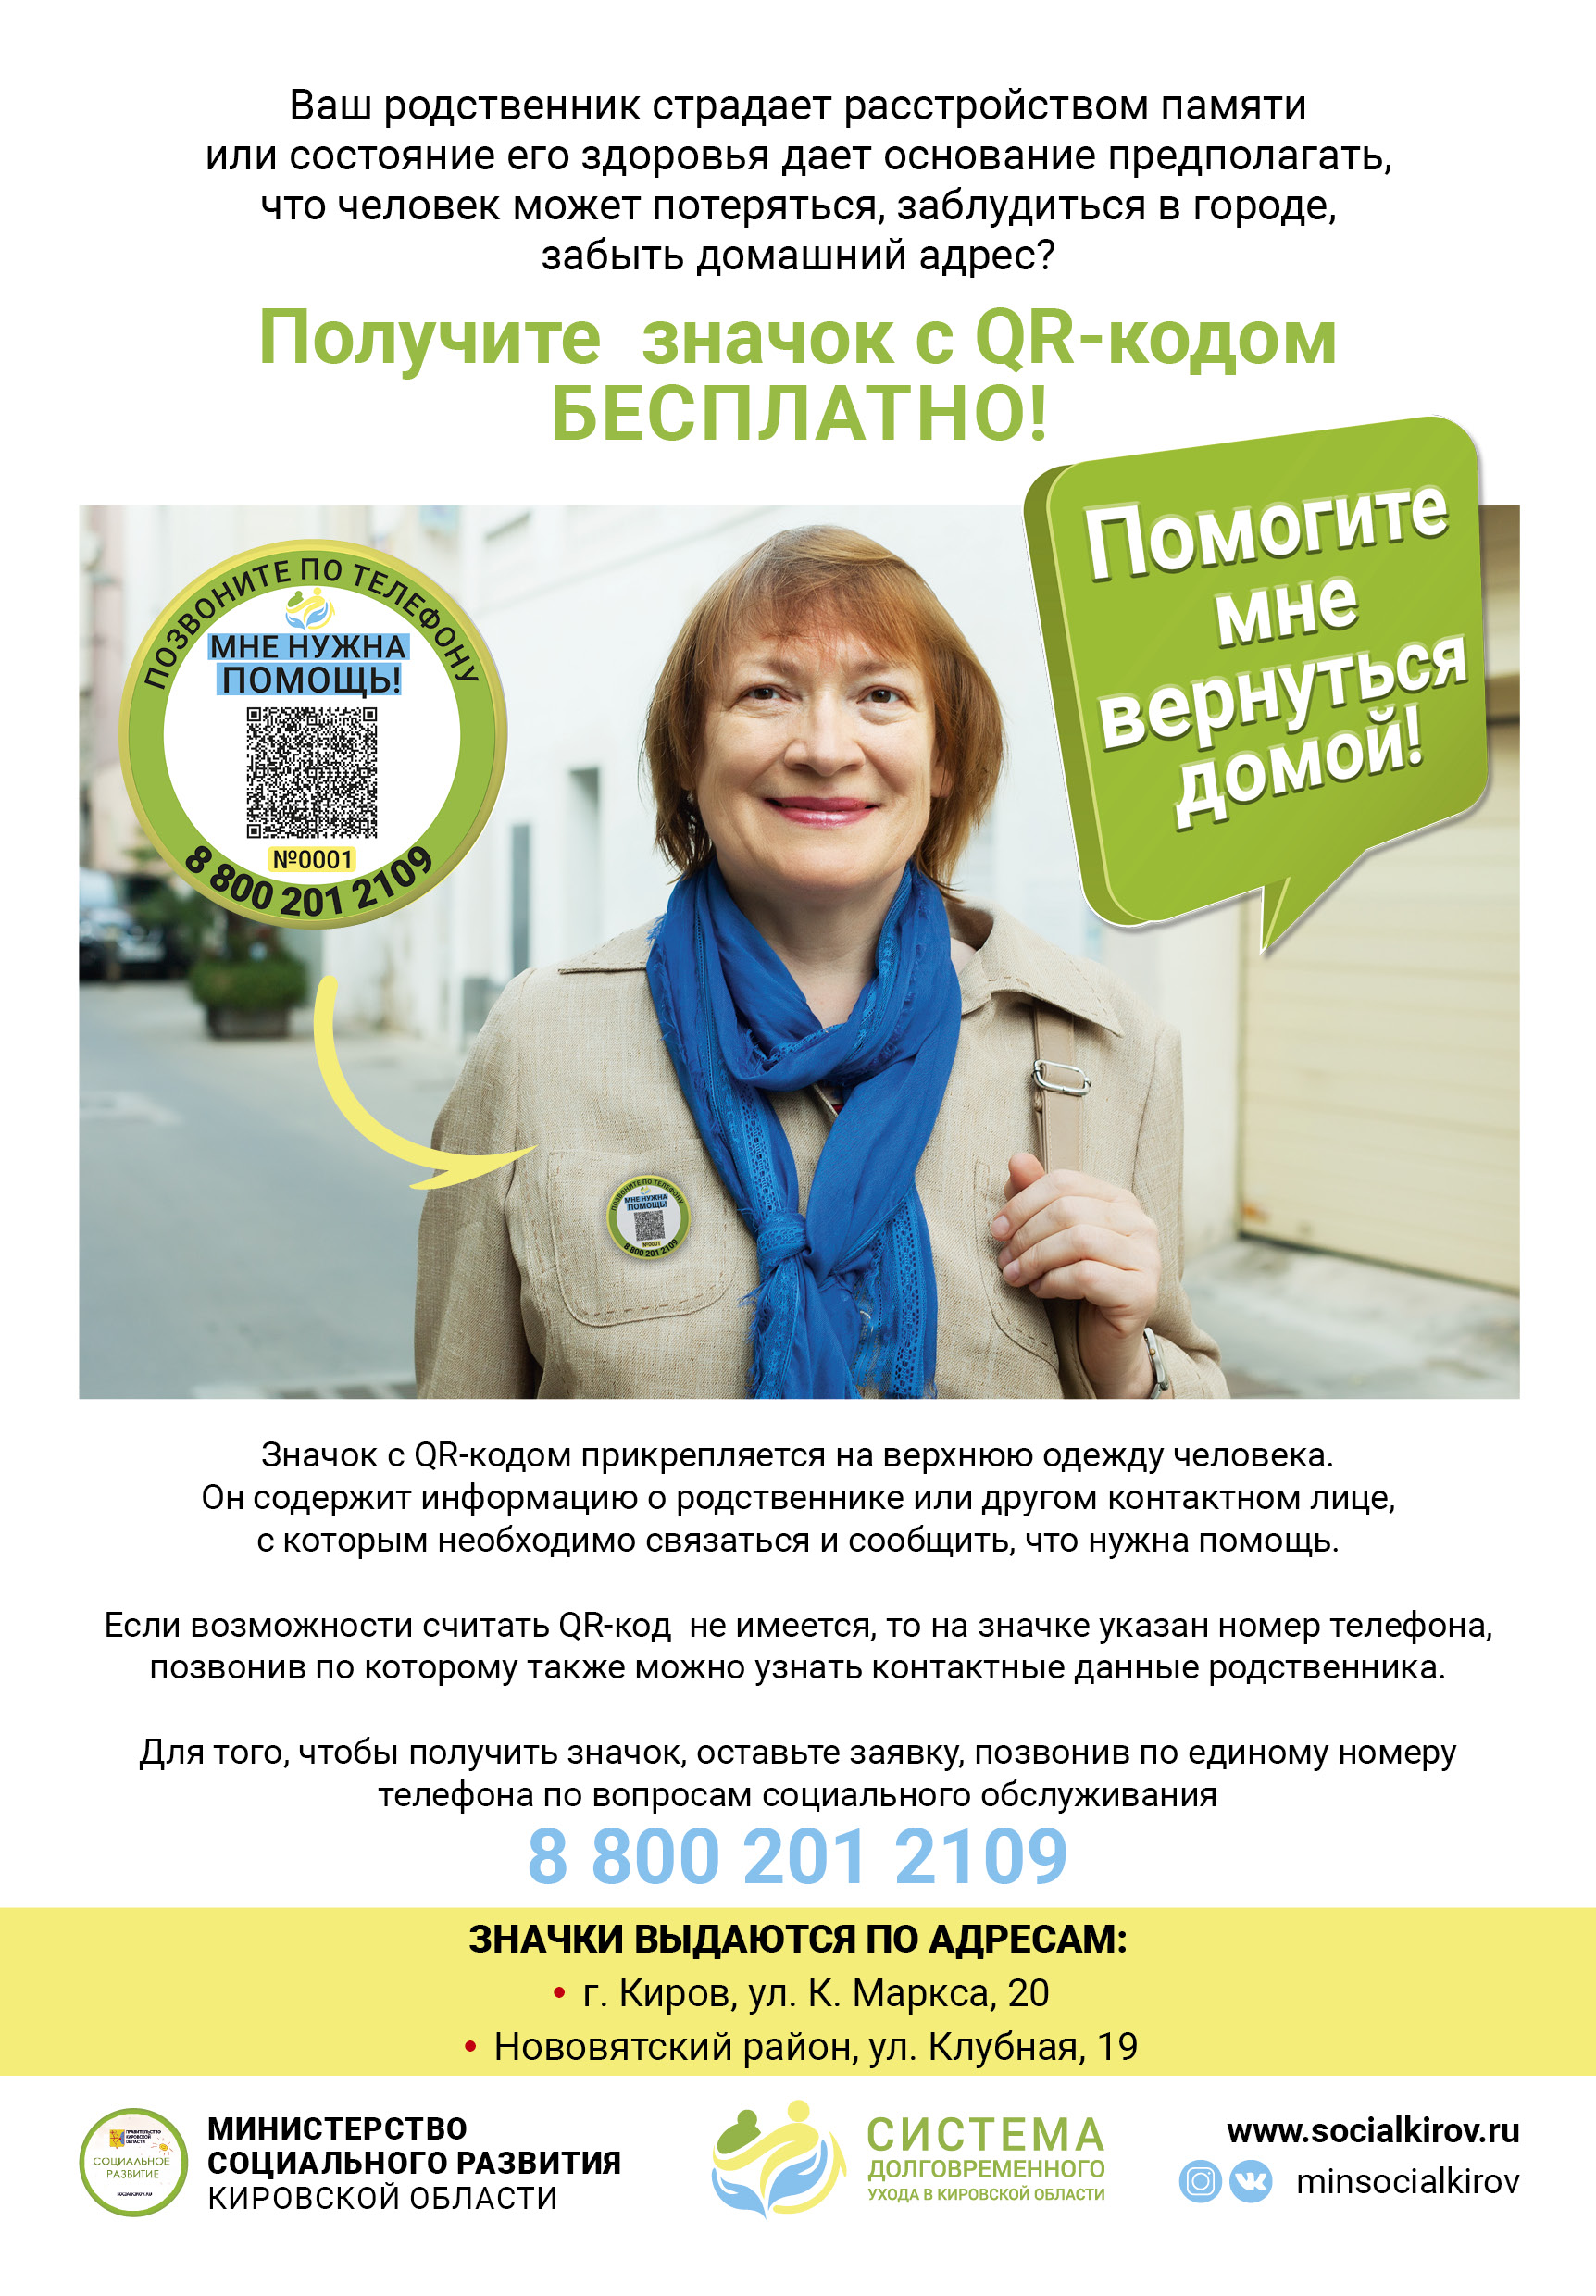 В целях информирования населения, министерством социального развития Кировской области разработан тематический социальный информационный буклет.